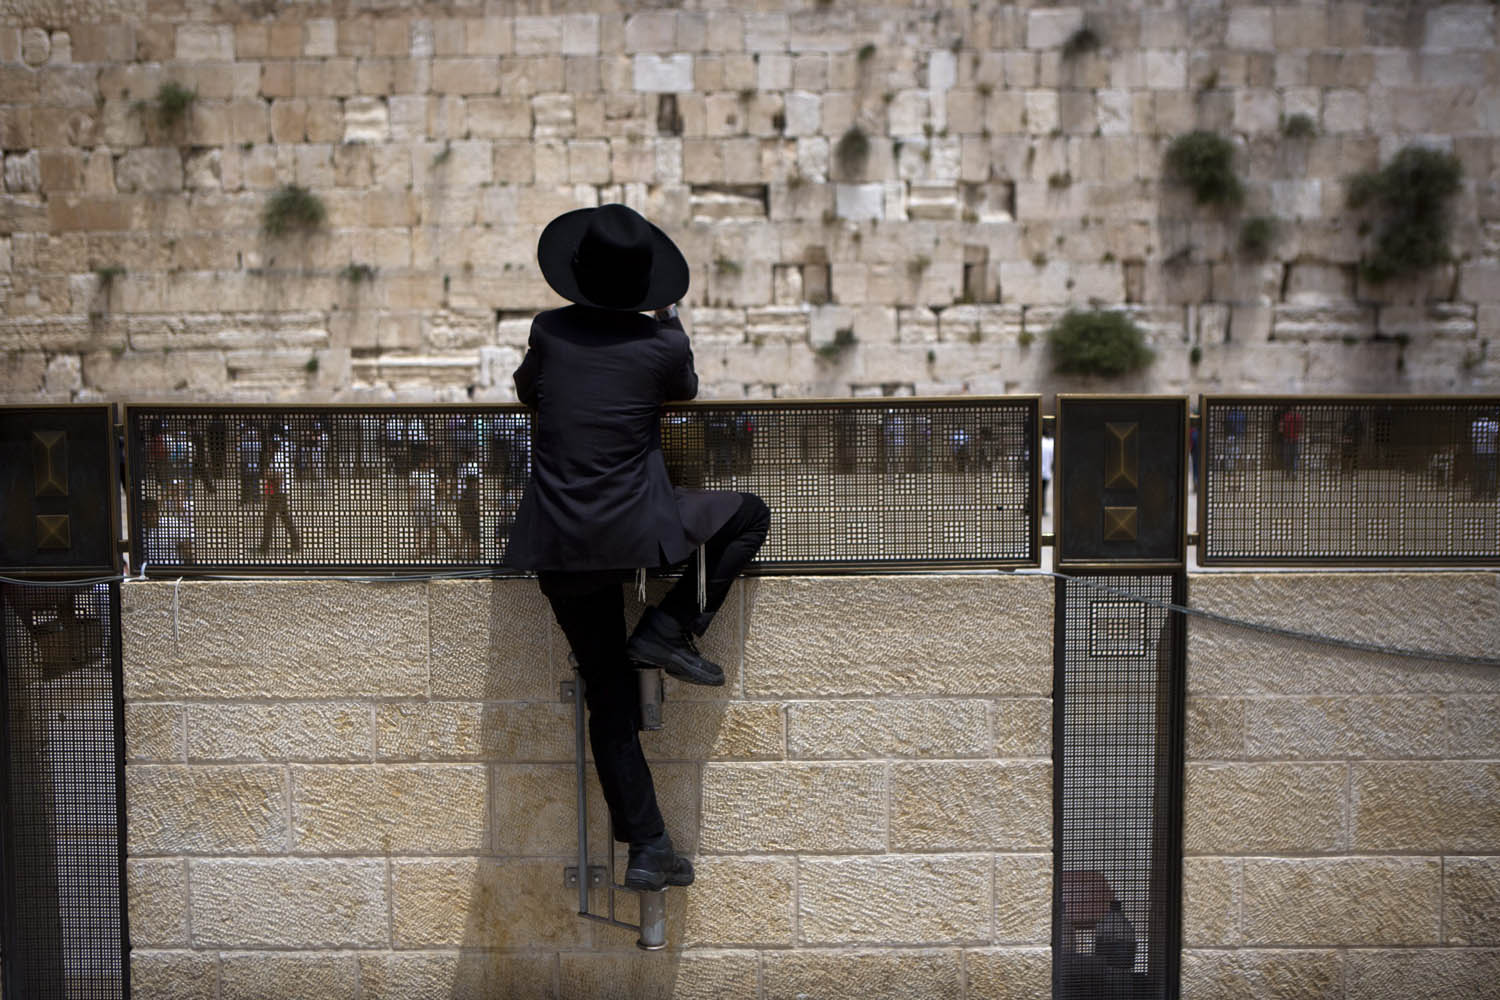 Western Wall in Jerusalem